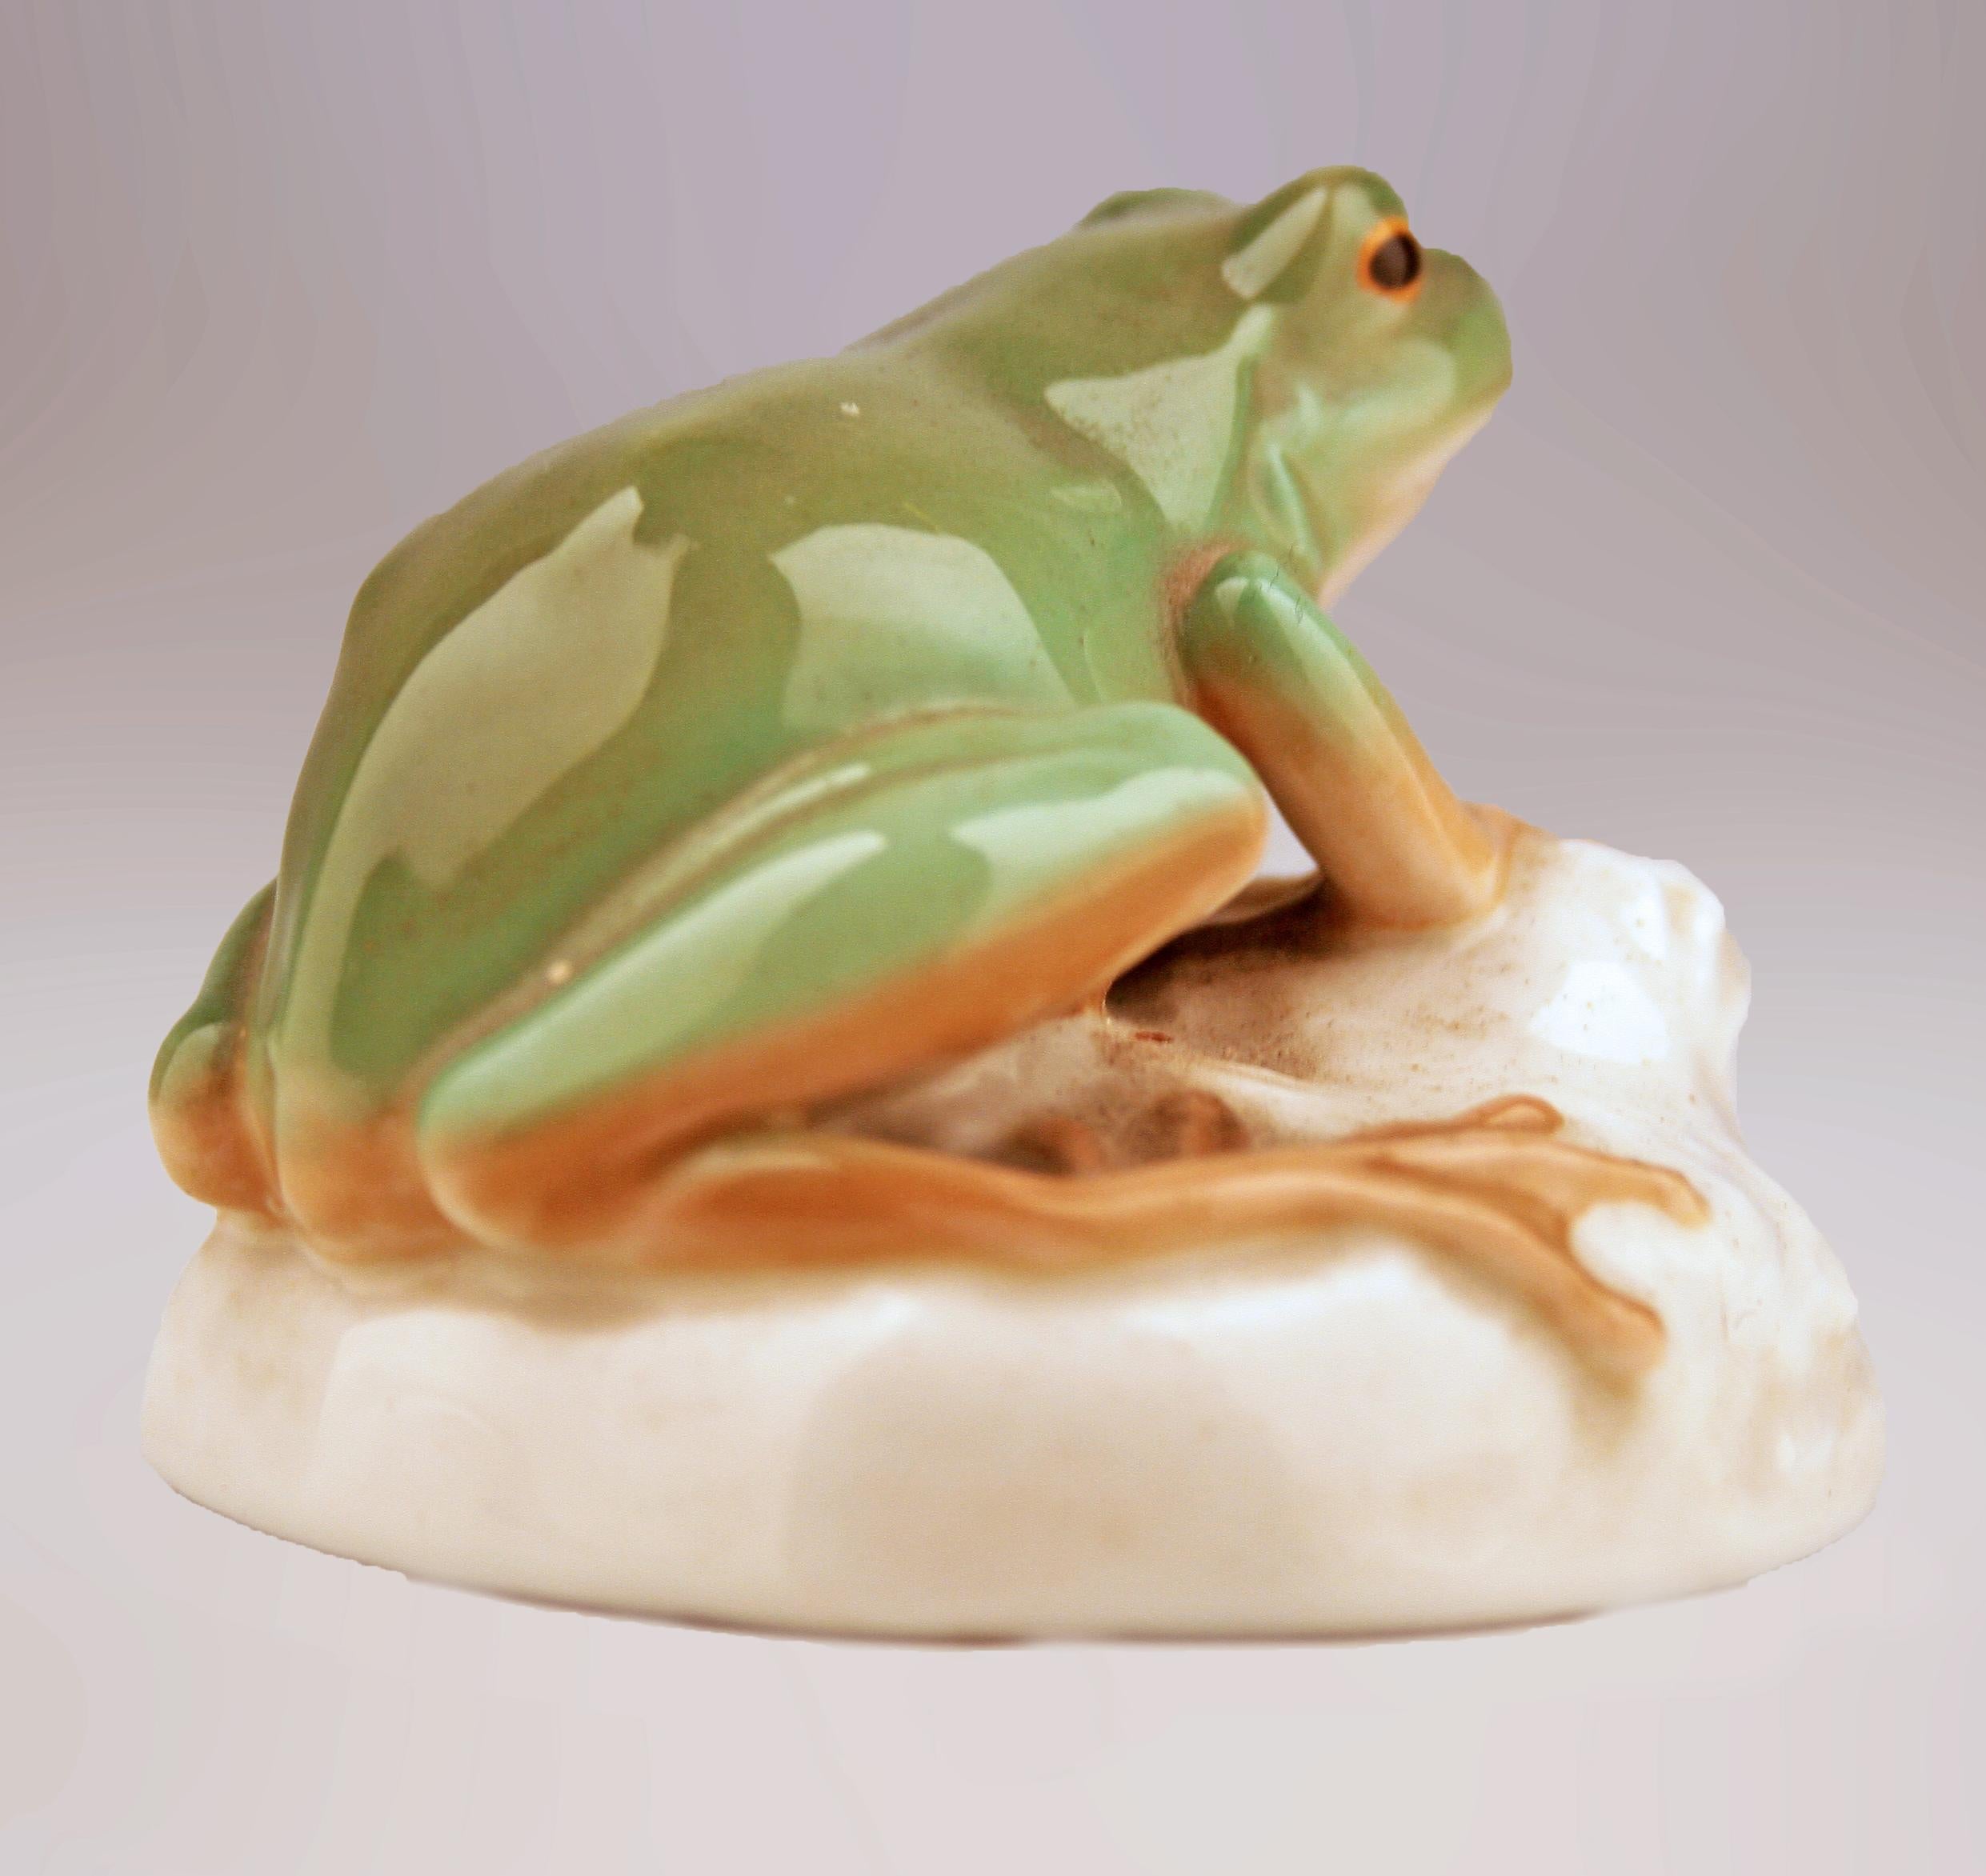 frog porcelain figurine